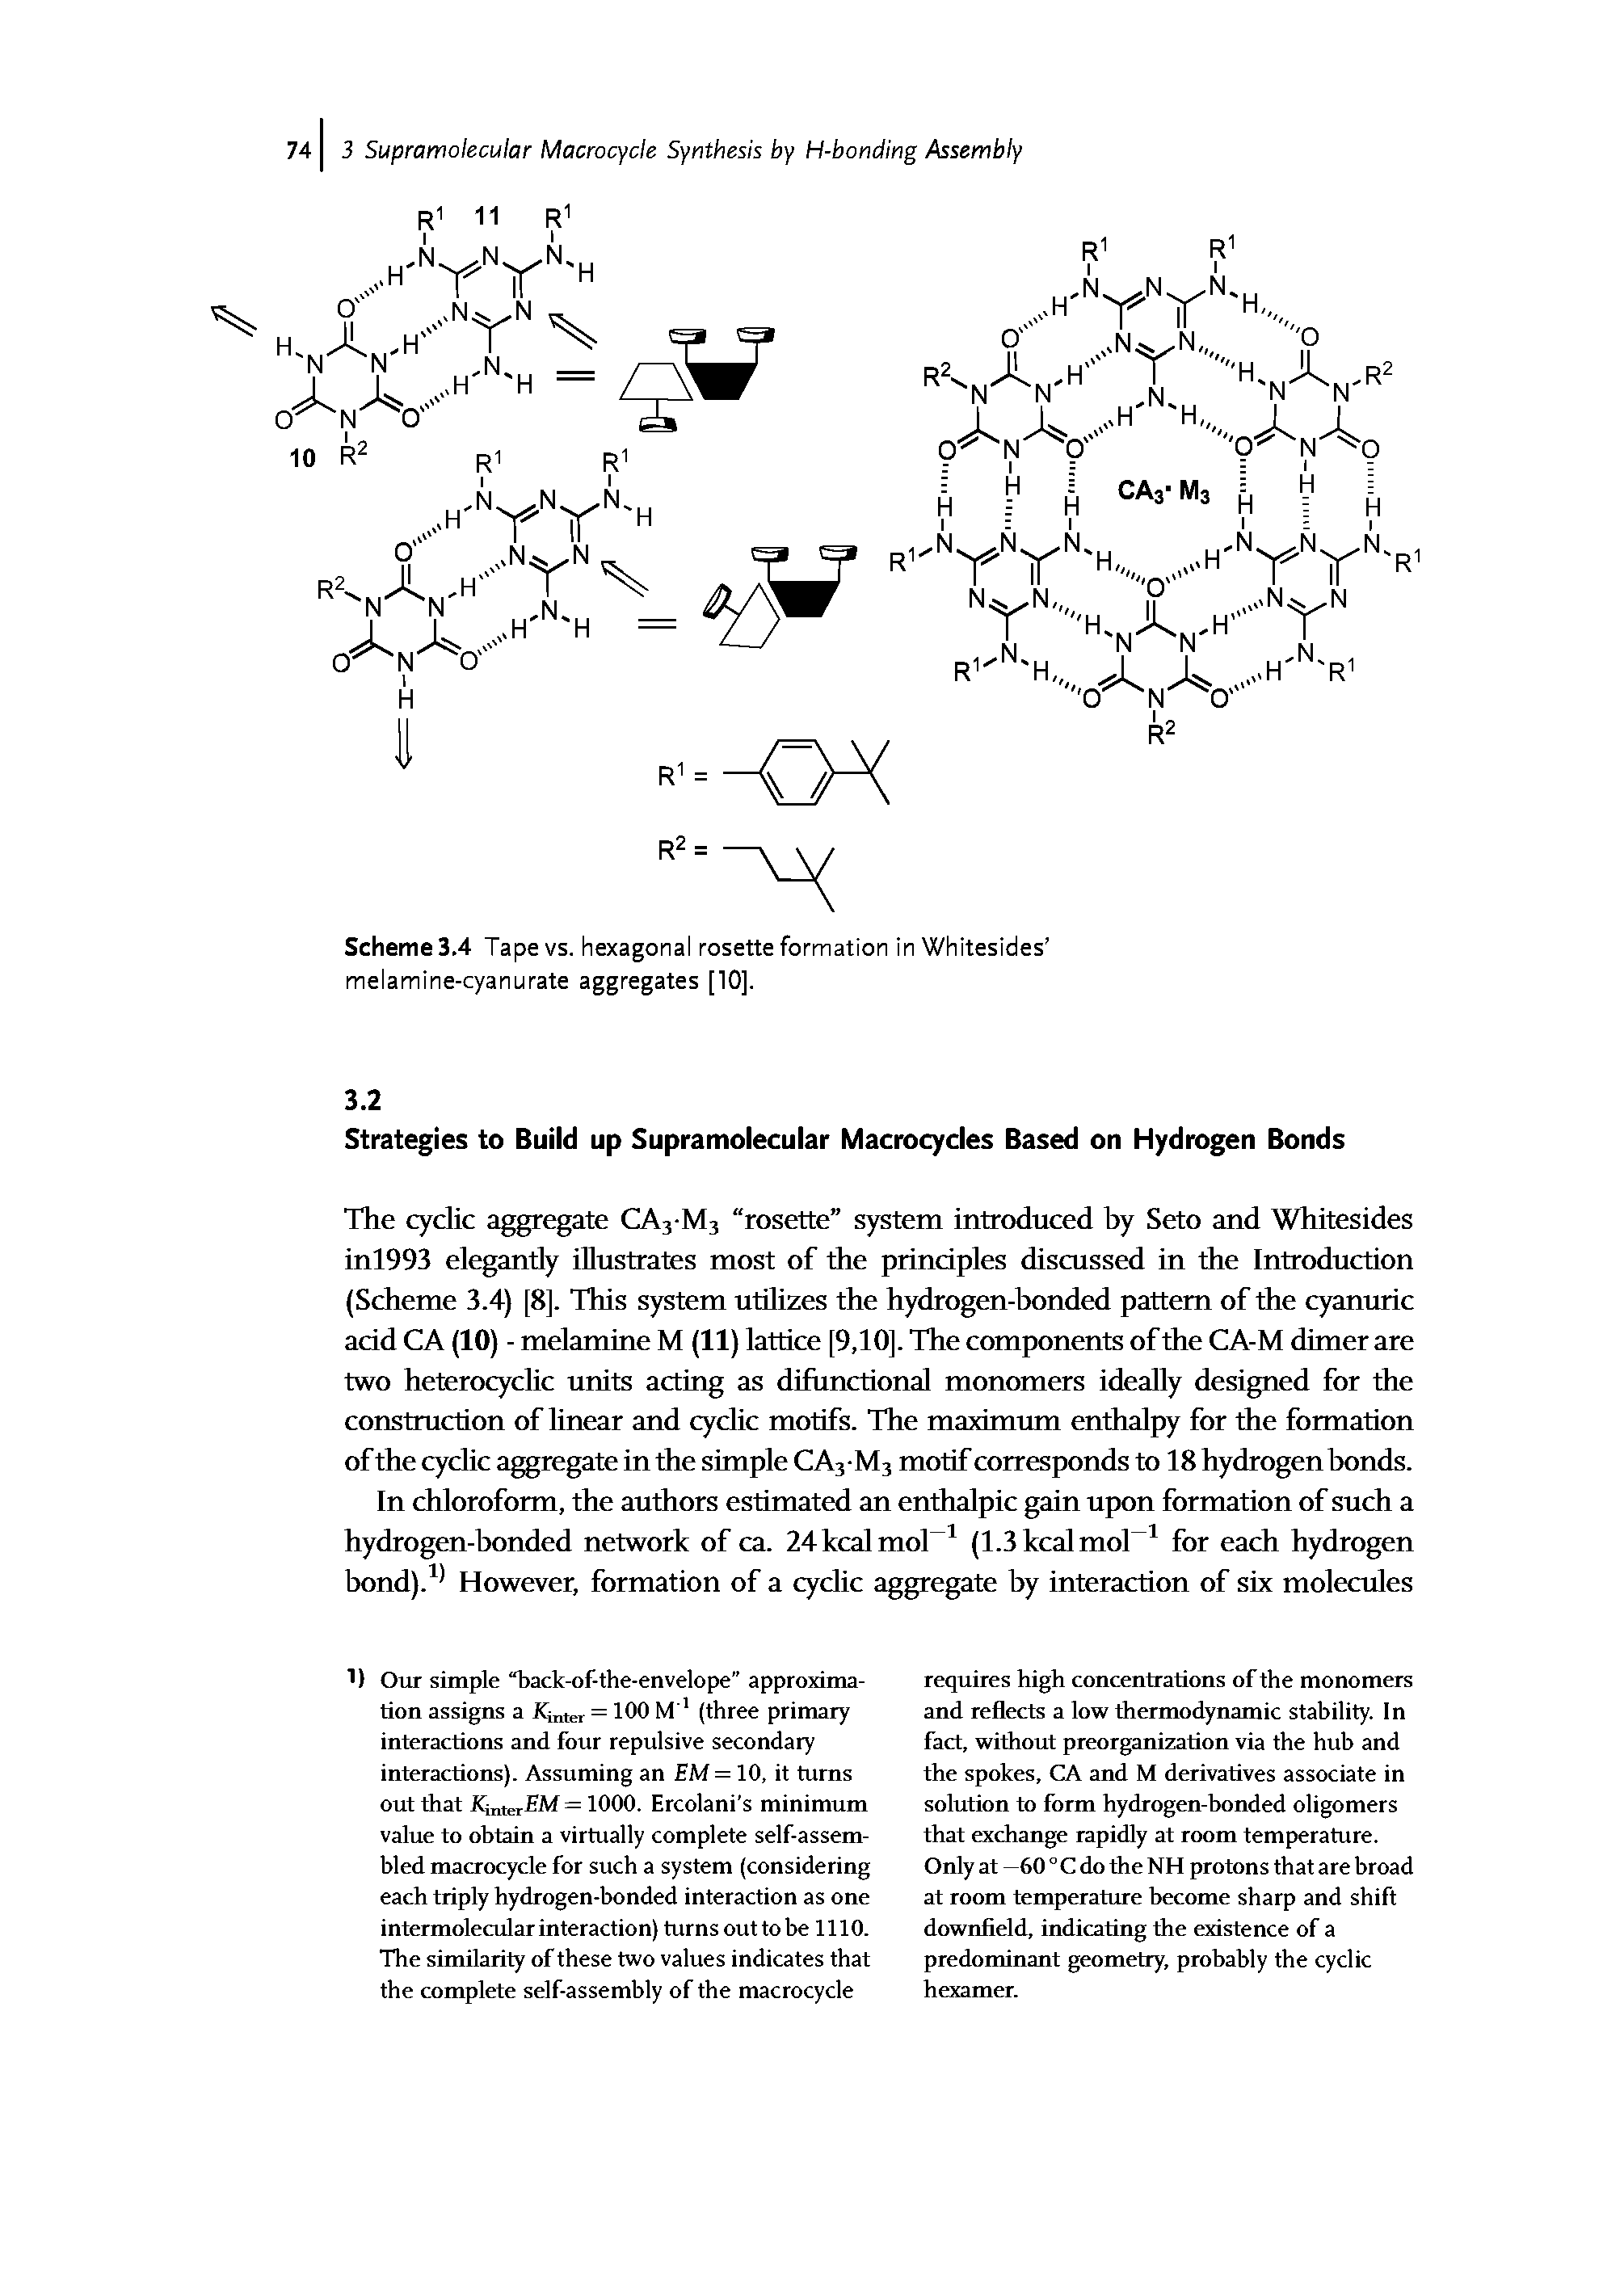 Scheme 3.4 Tape vs. hexagonal rosette formation in Whitesides melamine-cyanurate aggregates [10].